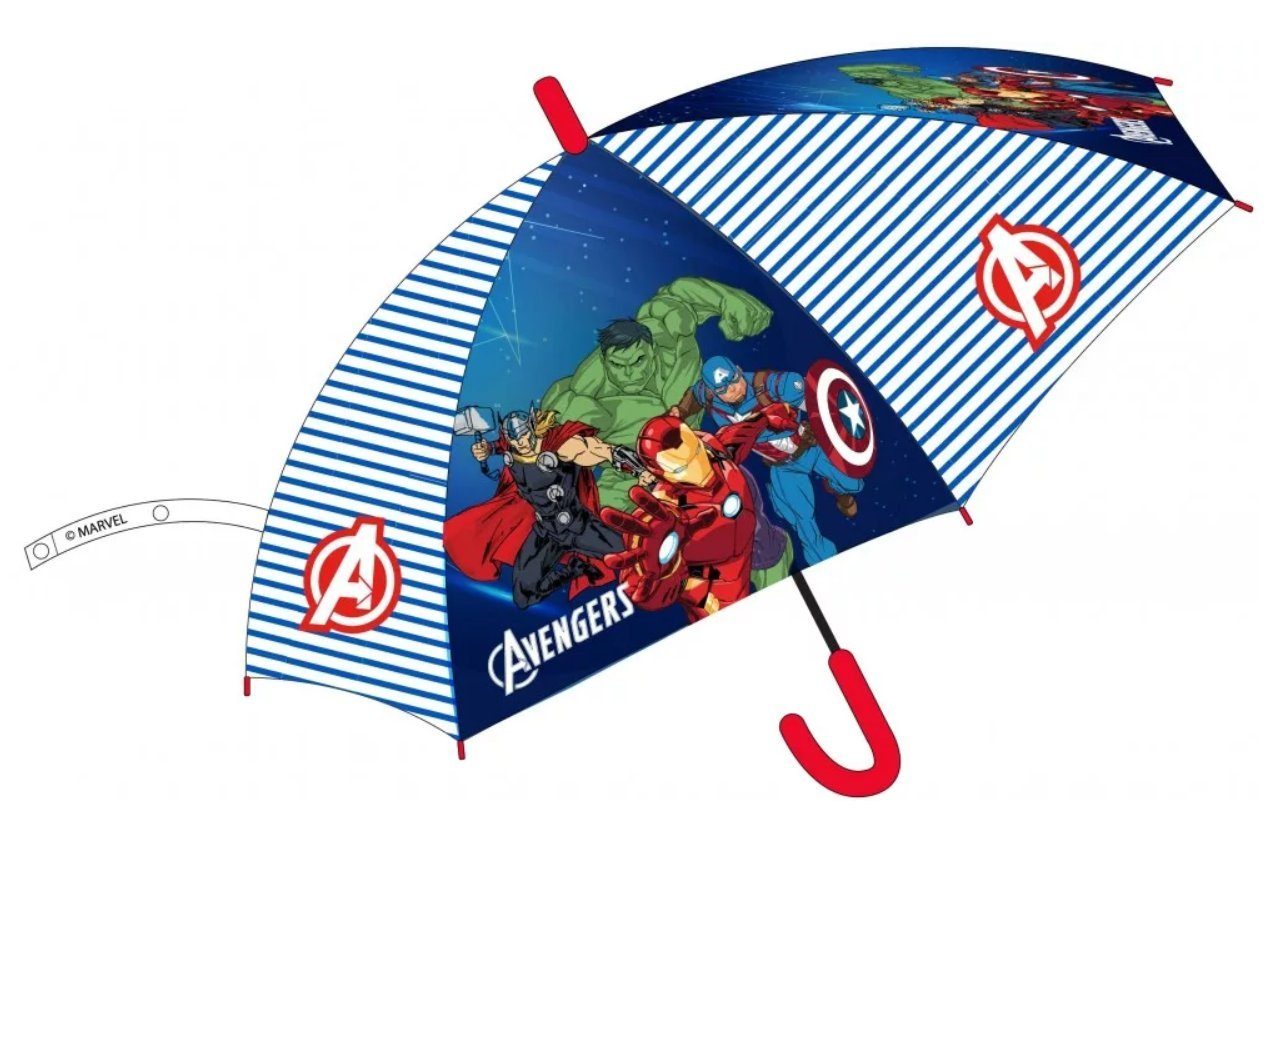 The AVENGERS Langregenschirm Avengers Kinderregenschirm (halbautomatisch) Ø74 cm